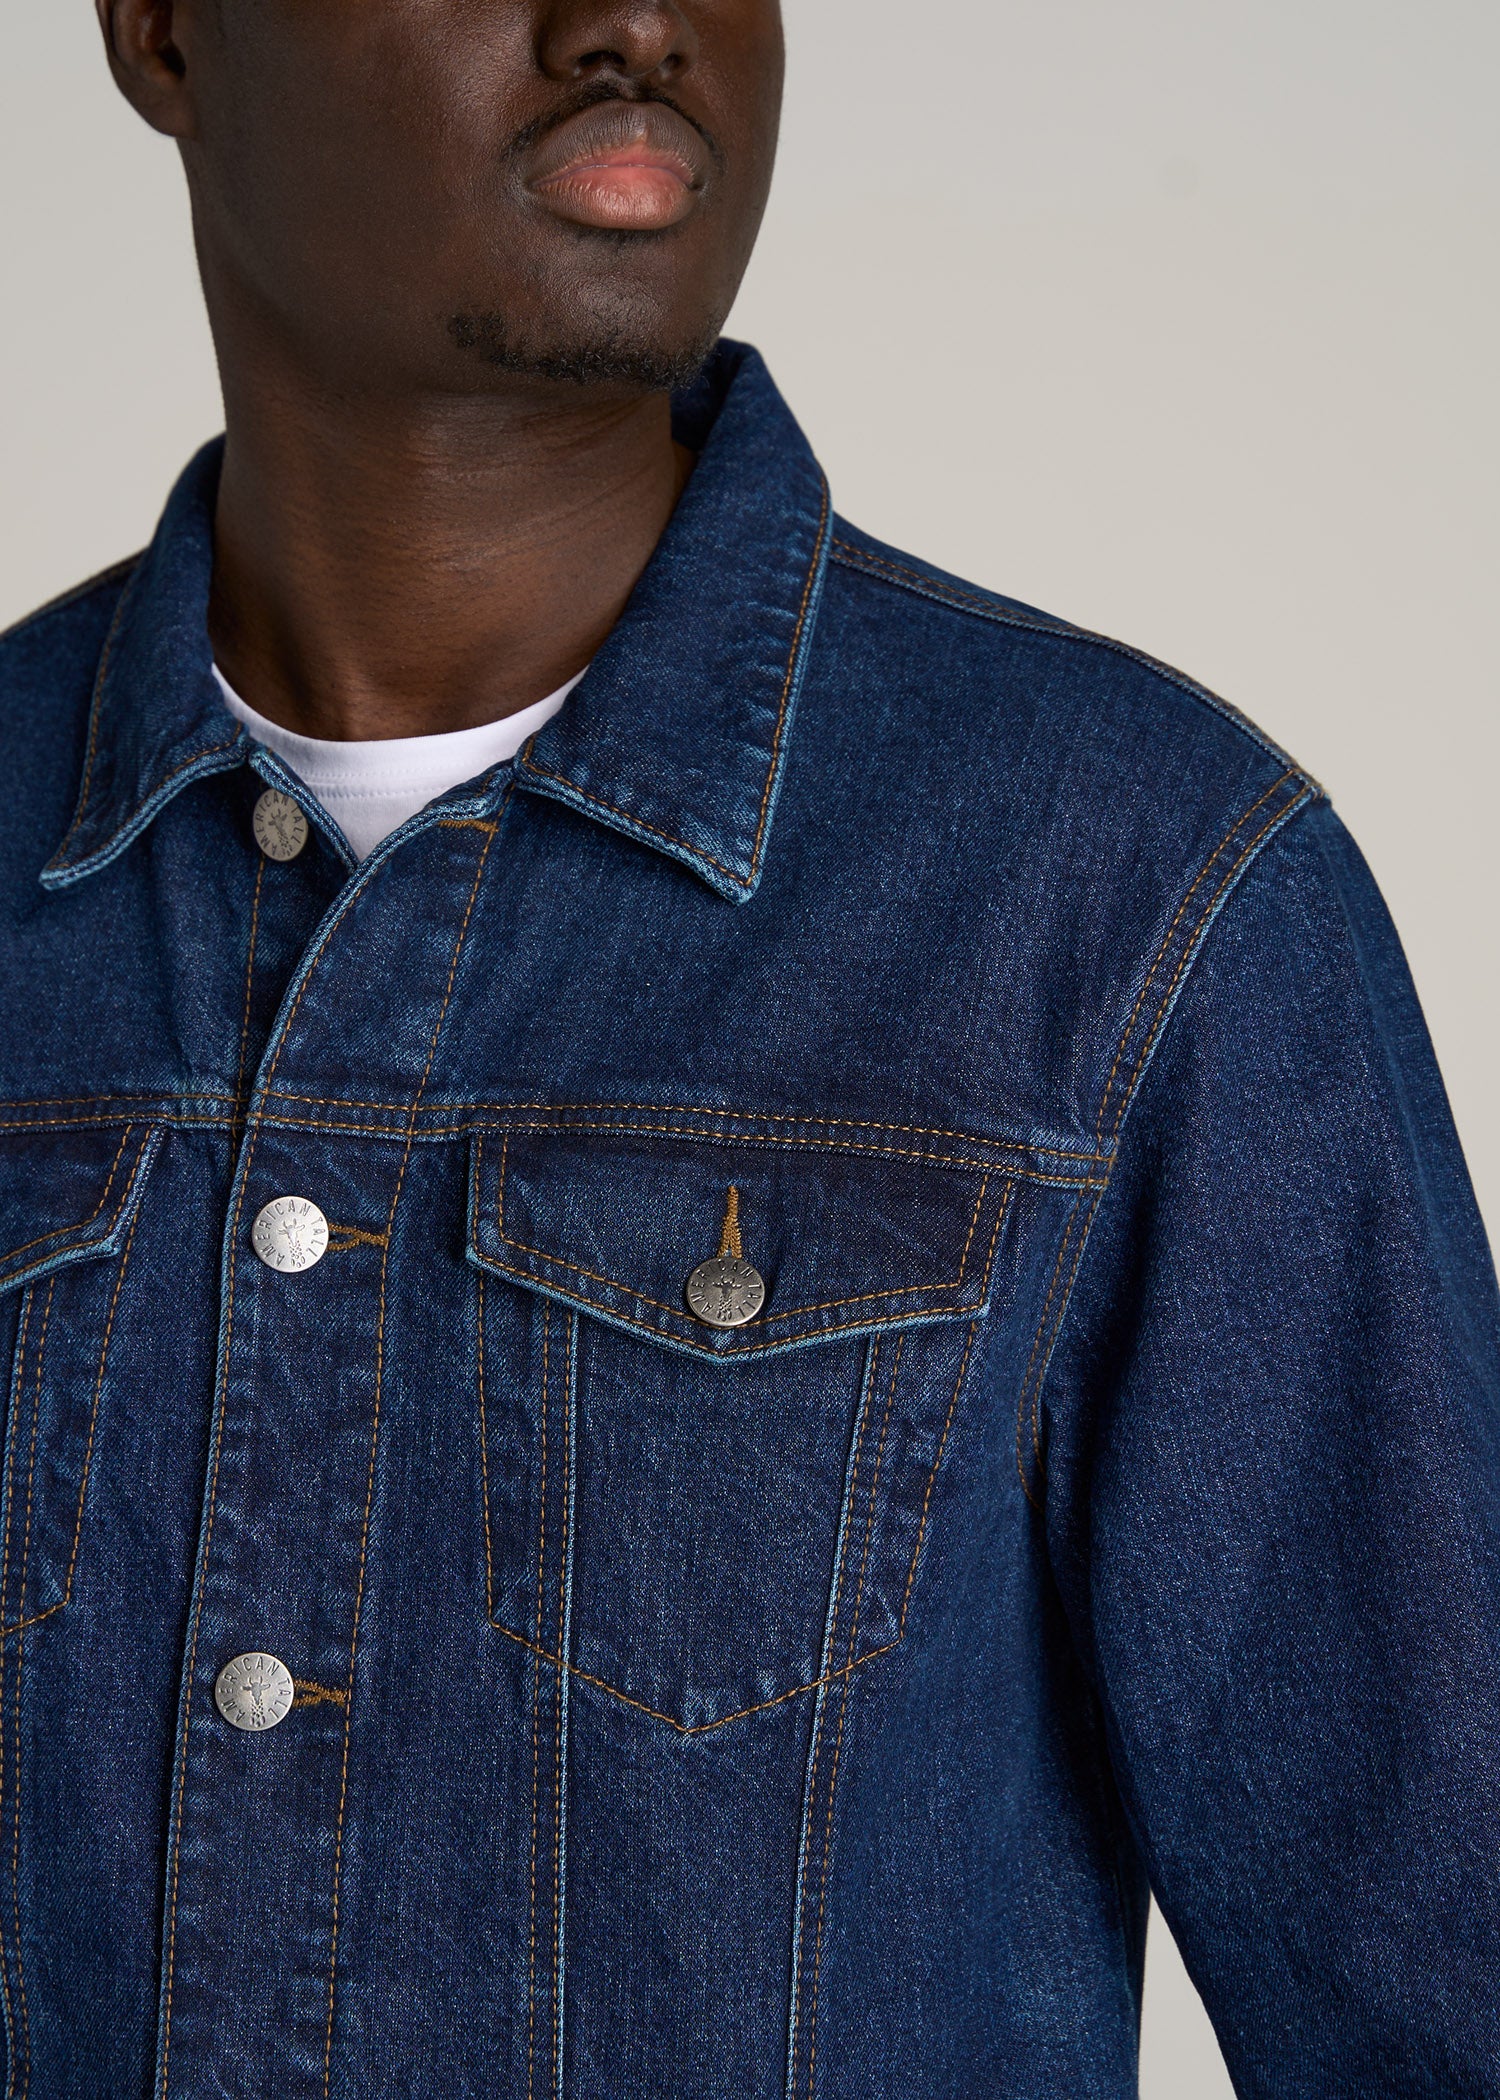 Blue Denim Jacket With Pocket Details